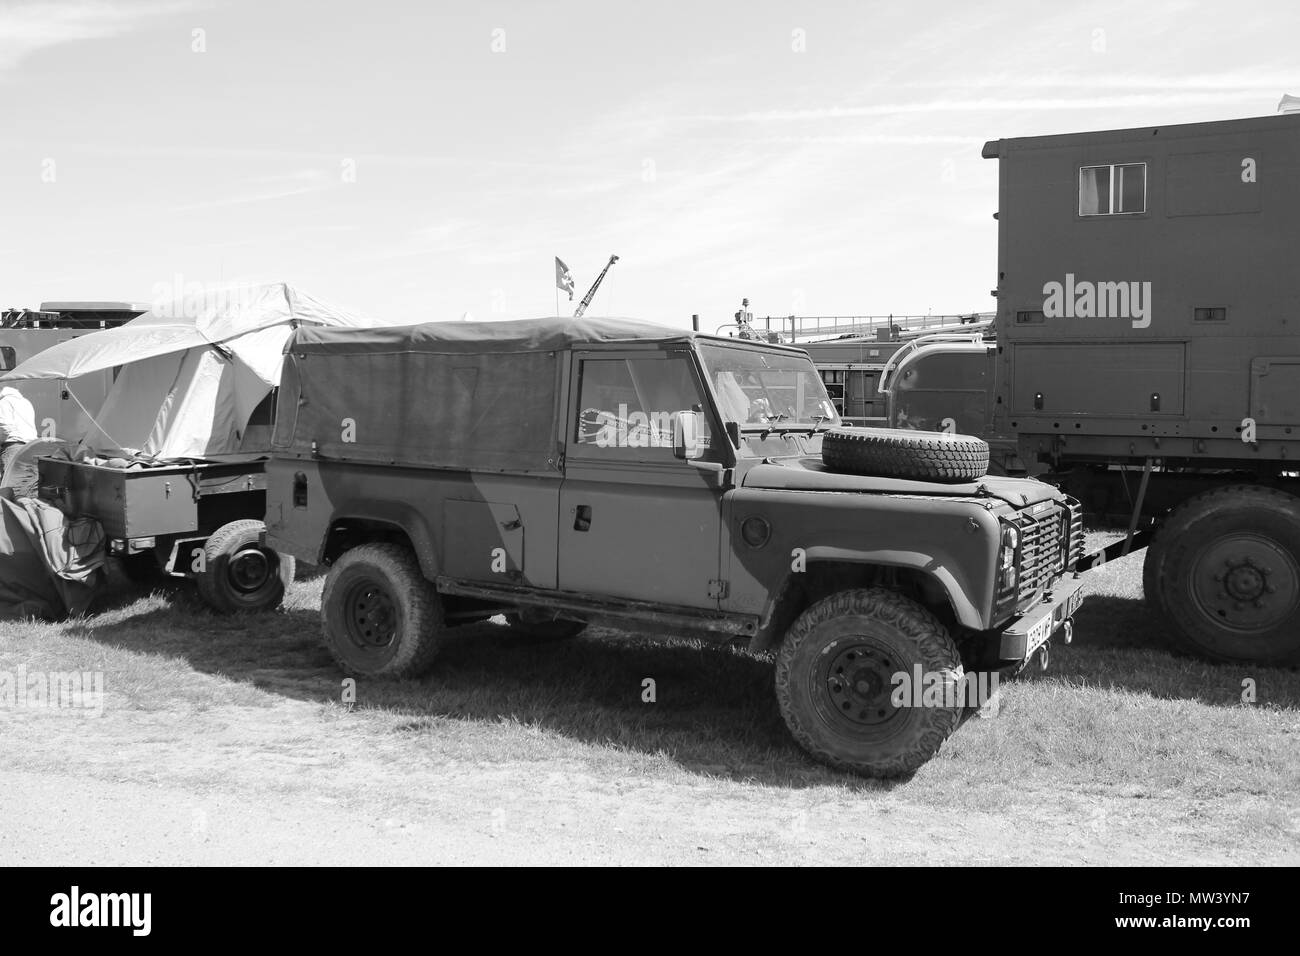 Military Vehicles Show at Llandudno, Wales Stock Photo